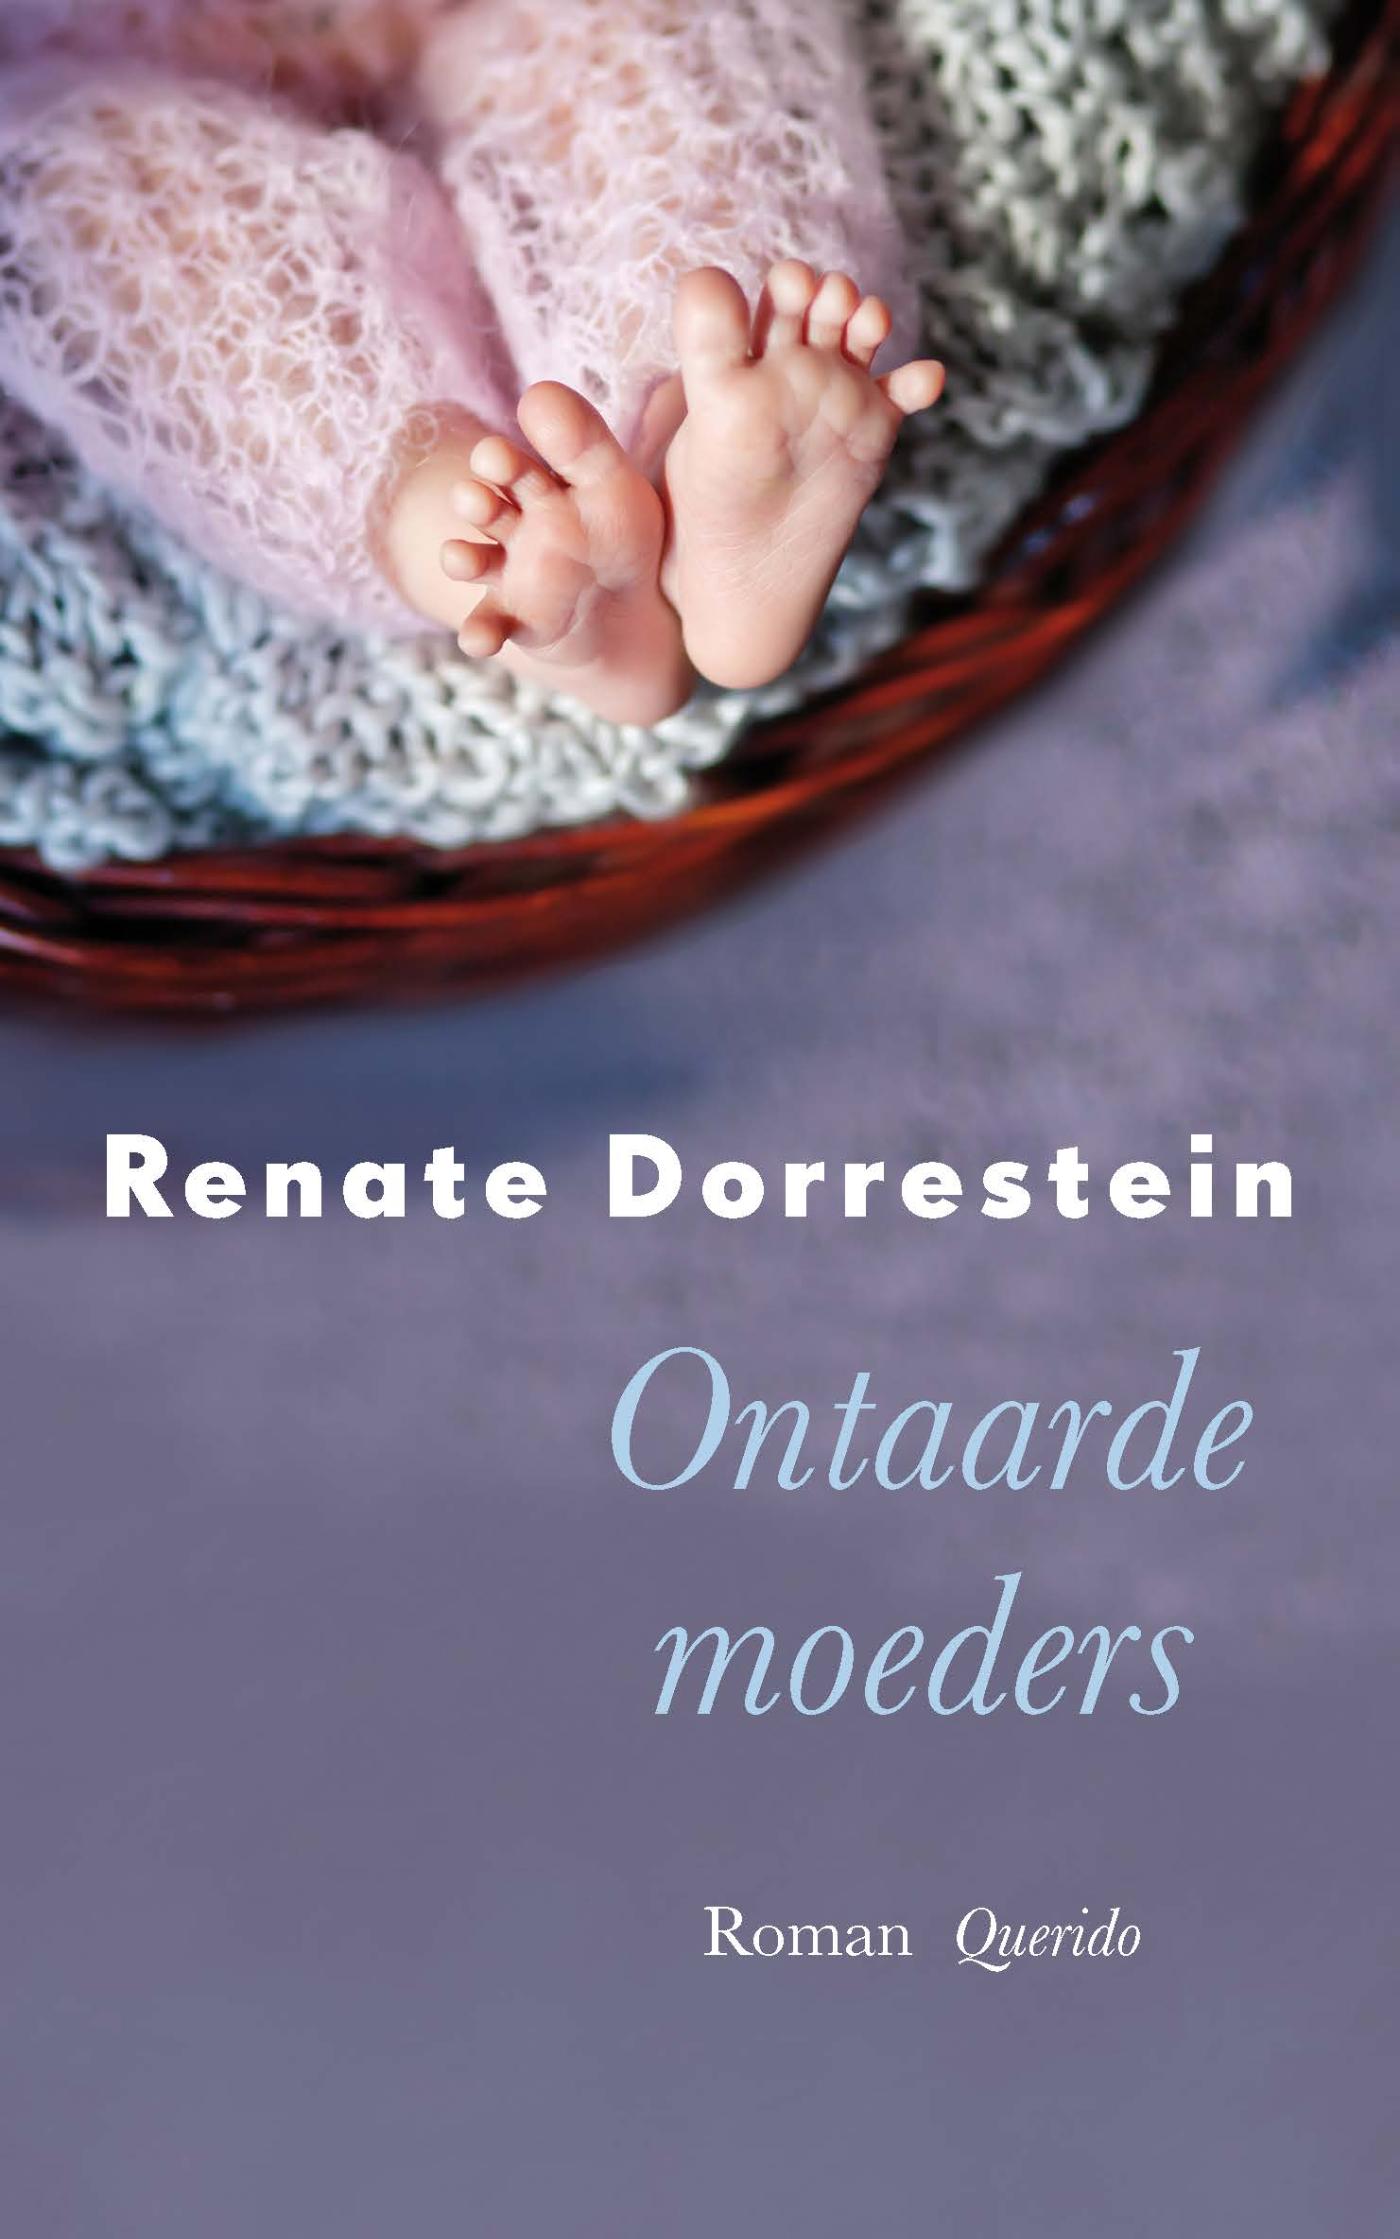 Ontaarde moeders (Ebook)